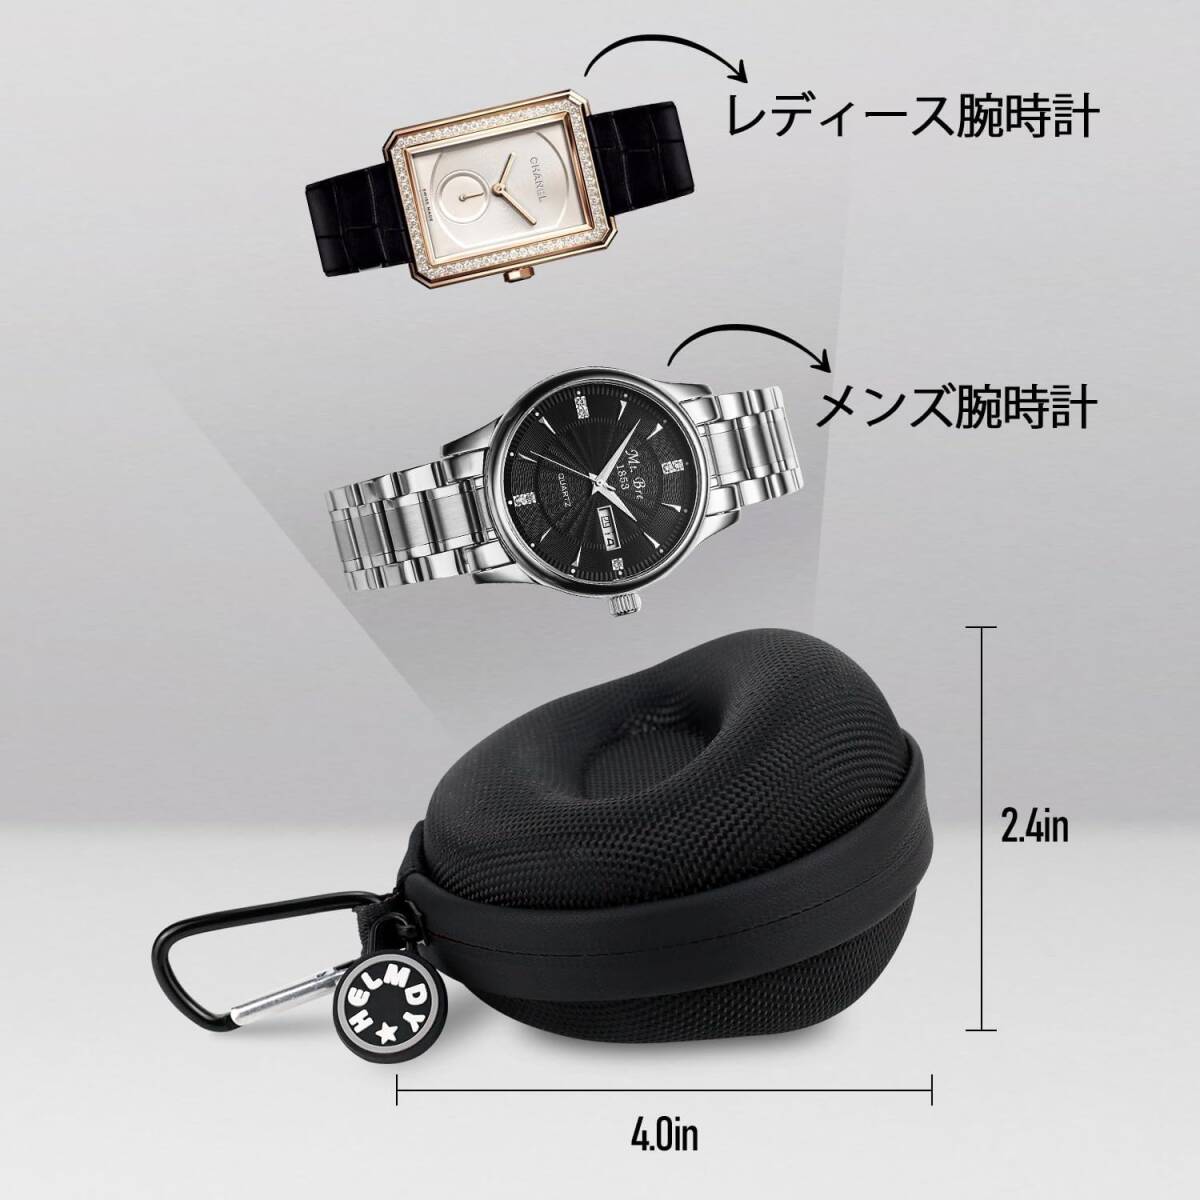  наручные часы кейс для хранения кейс для часов черный Smart для часов путешествие командировка часы кейс для хранения Watch Case 52MM до D нейлон specification чёрный 